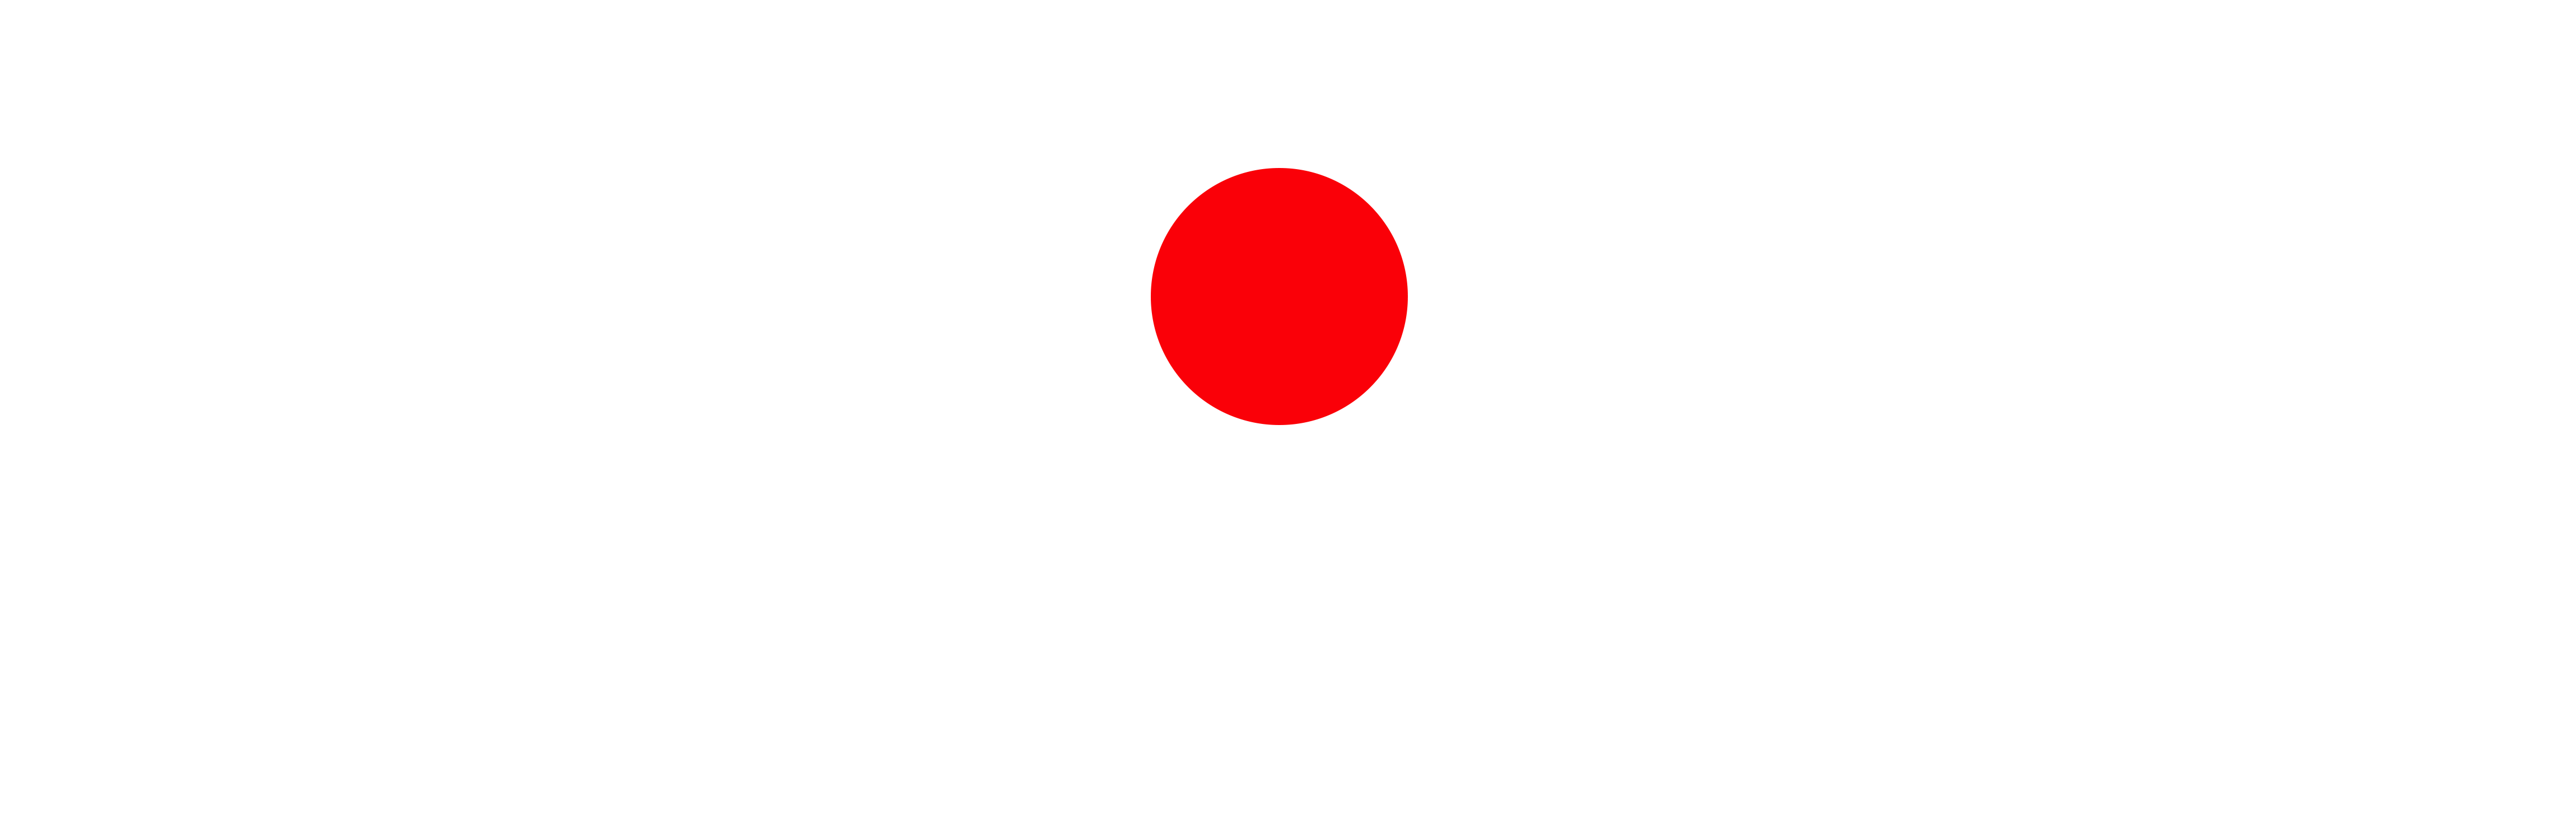 Gävle Yogaskola